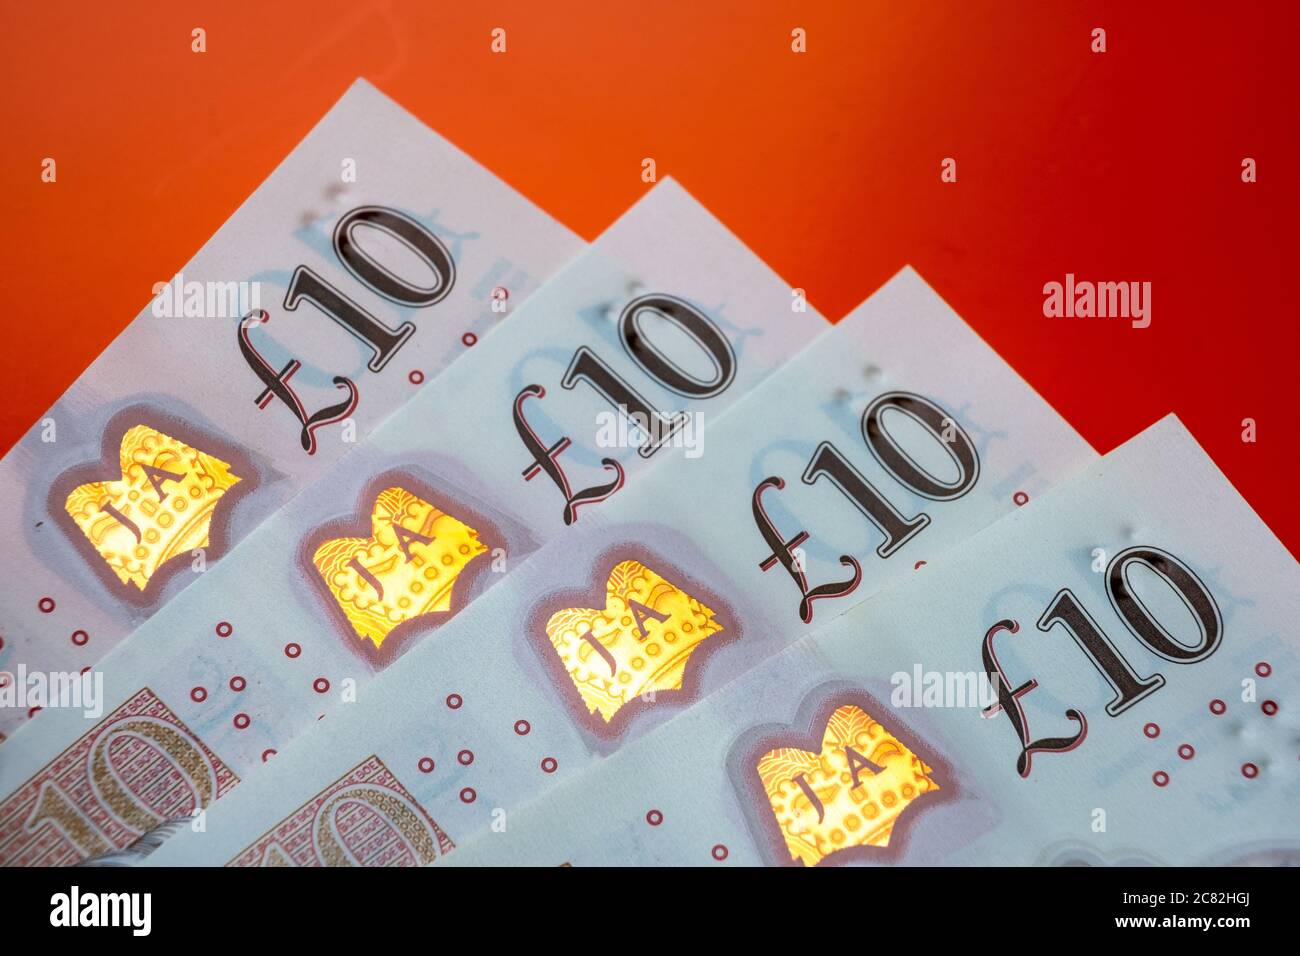 Britische Pfund Sterling Banknoten. Ecken von 10 Pfund Noten platziert eine auf der anderen auf dem lebendigen orage-roten Hintergrund. Stockfoto